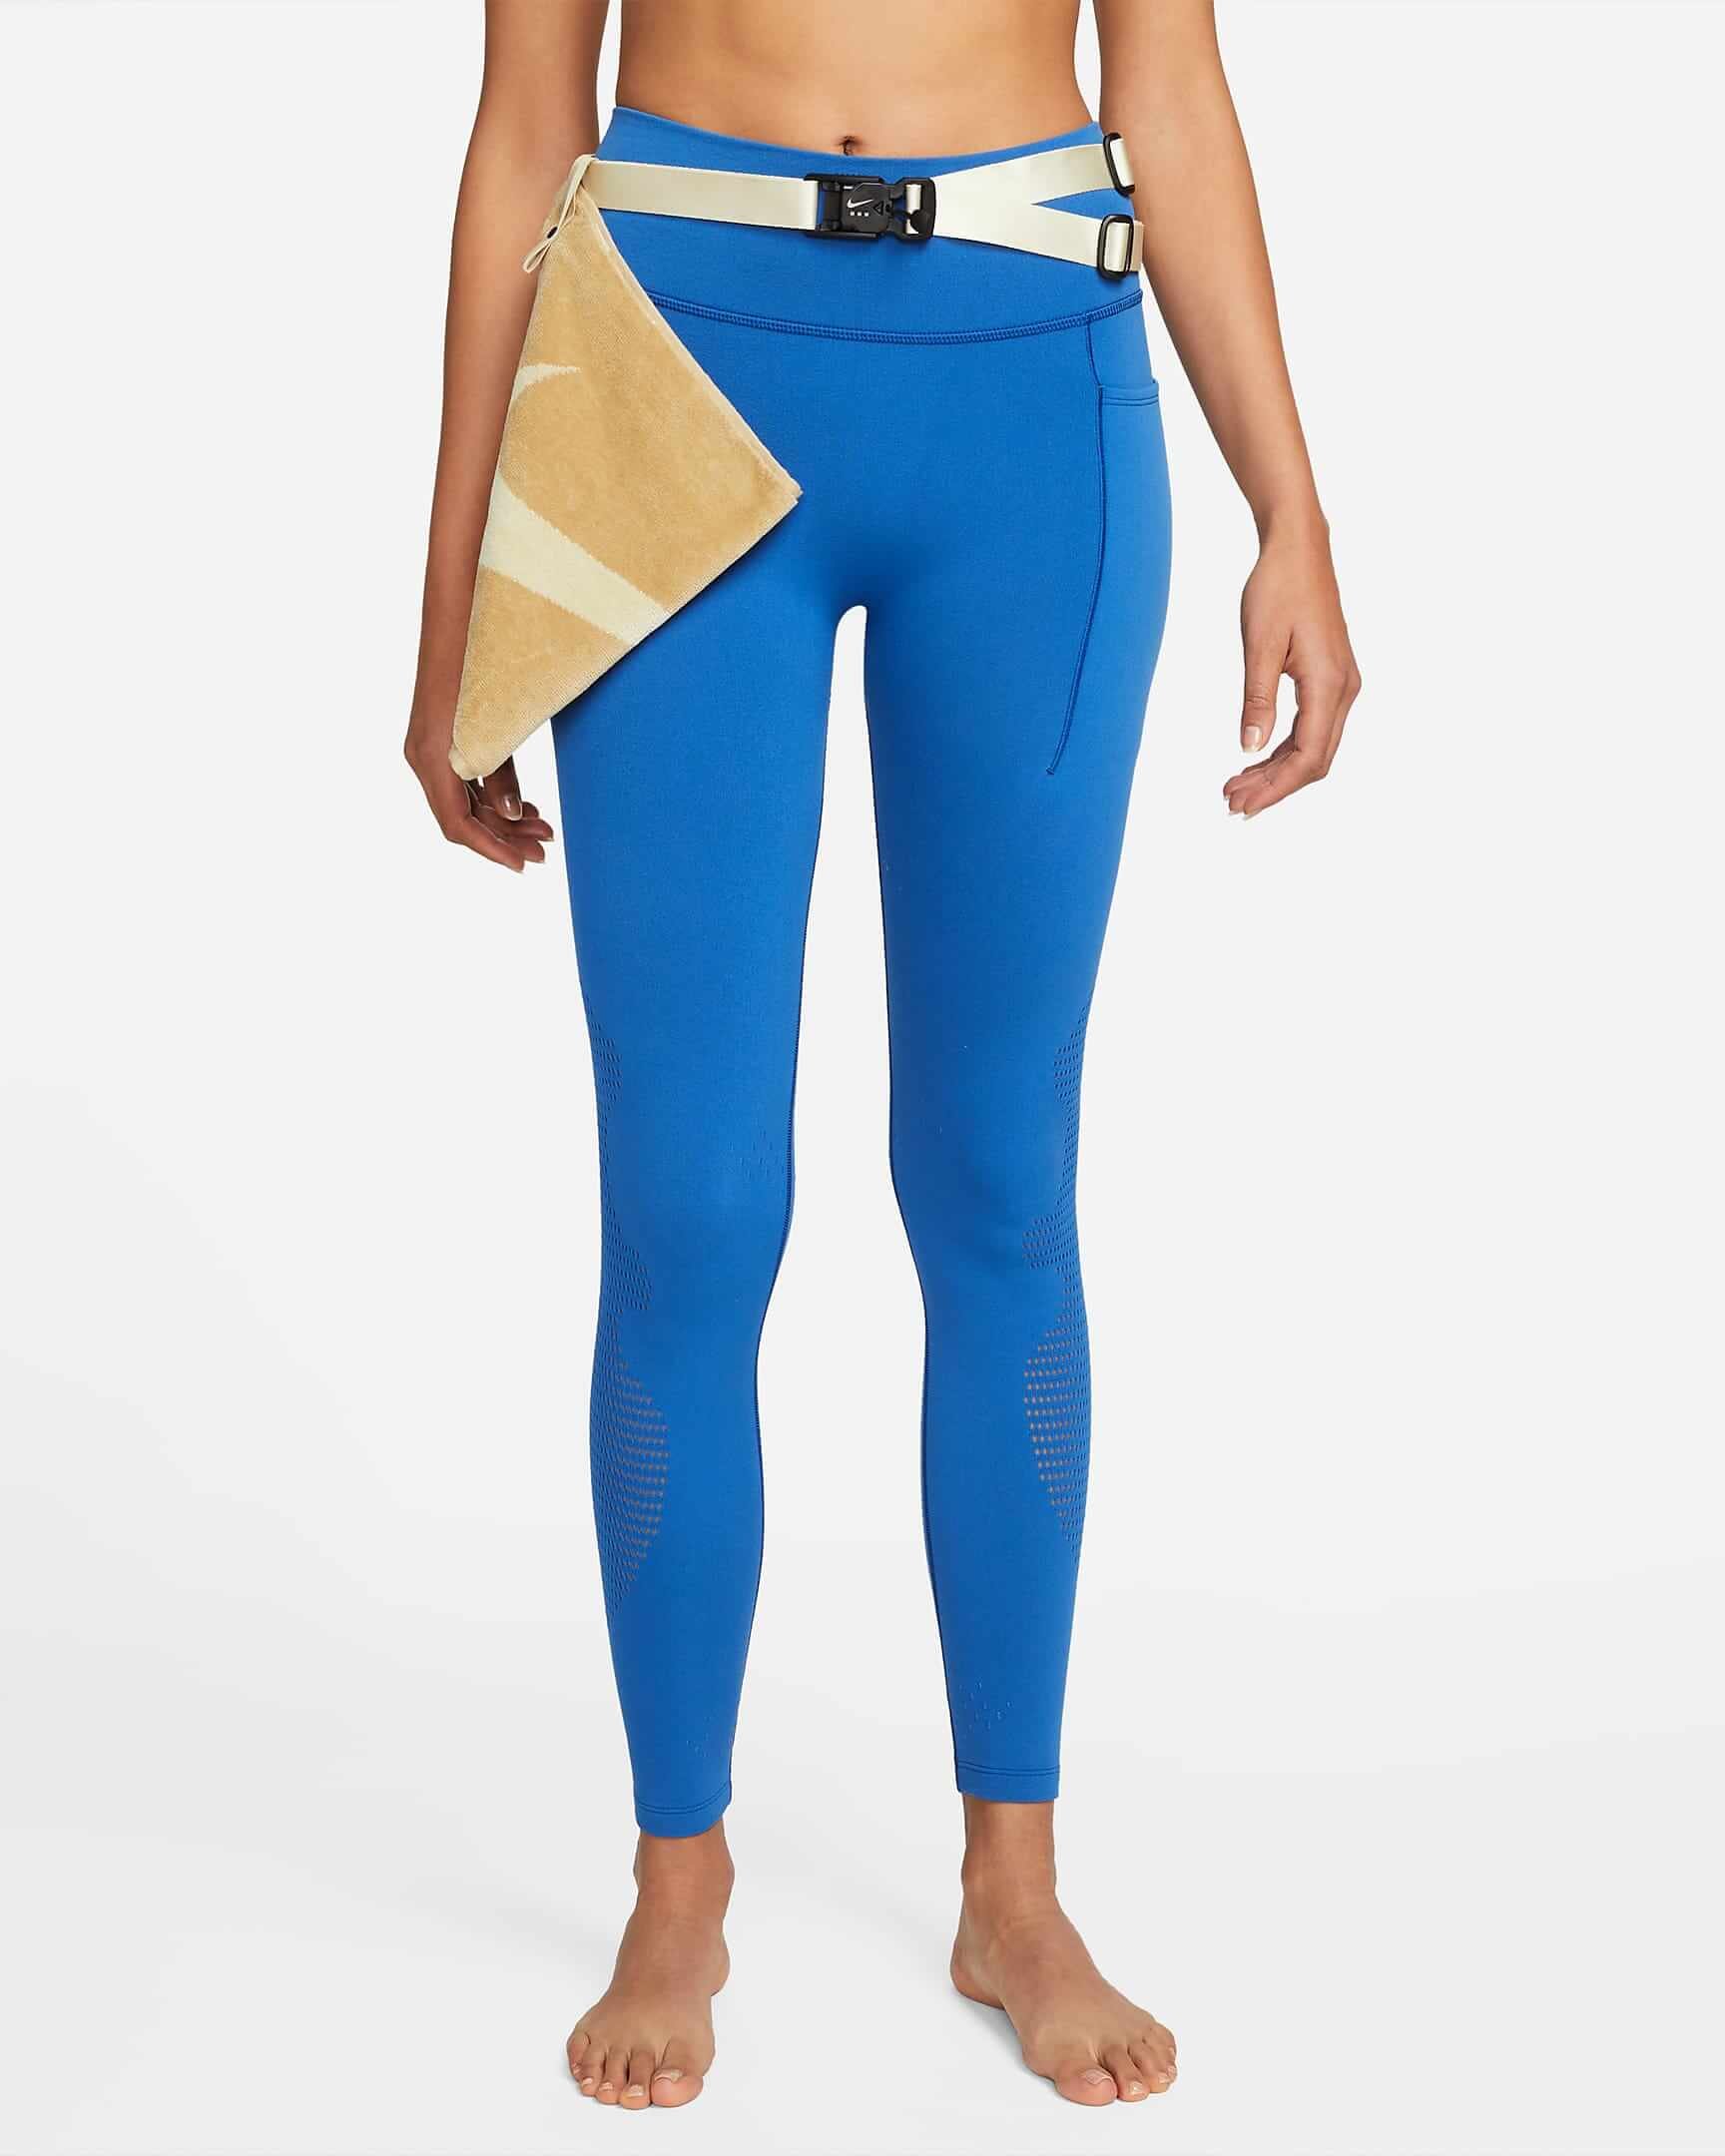 CNK-Nike-MMW-womens-leggings-blue.jpeg